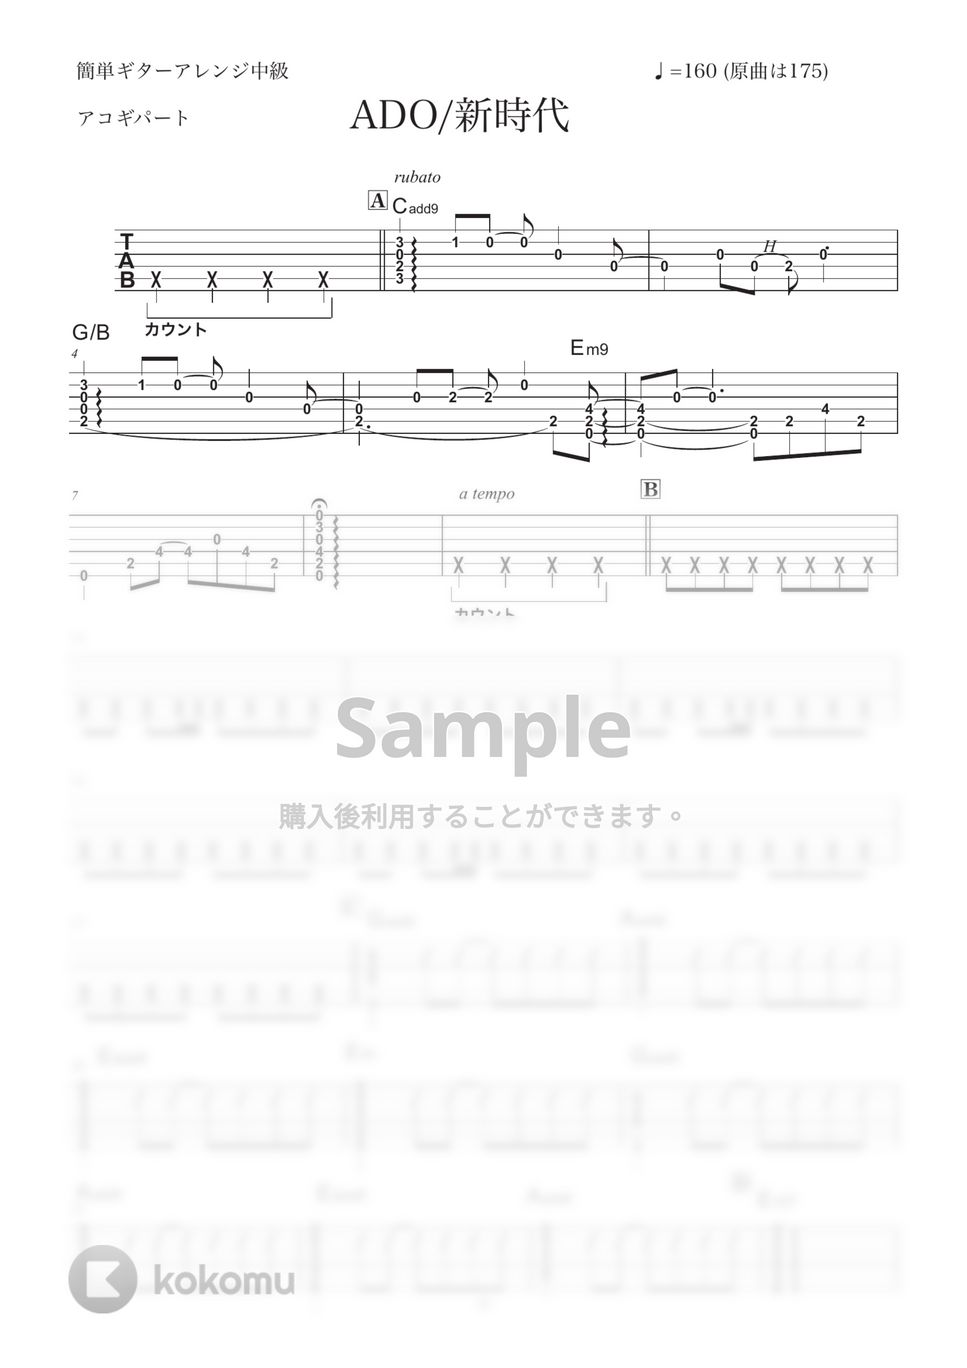 Ado - 新時代 (アコギ/伴奏) by コウダタカシ